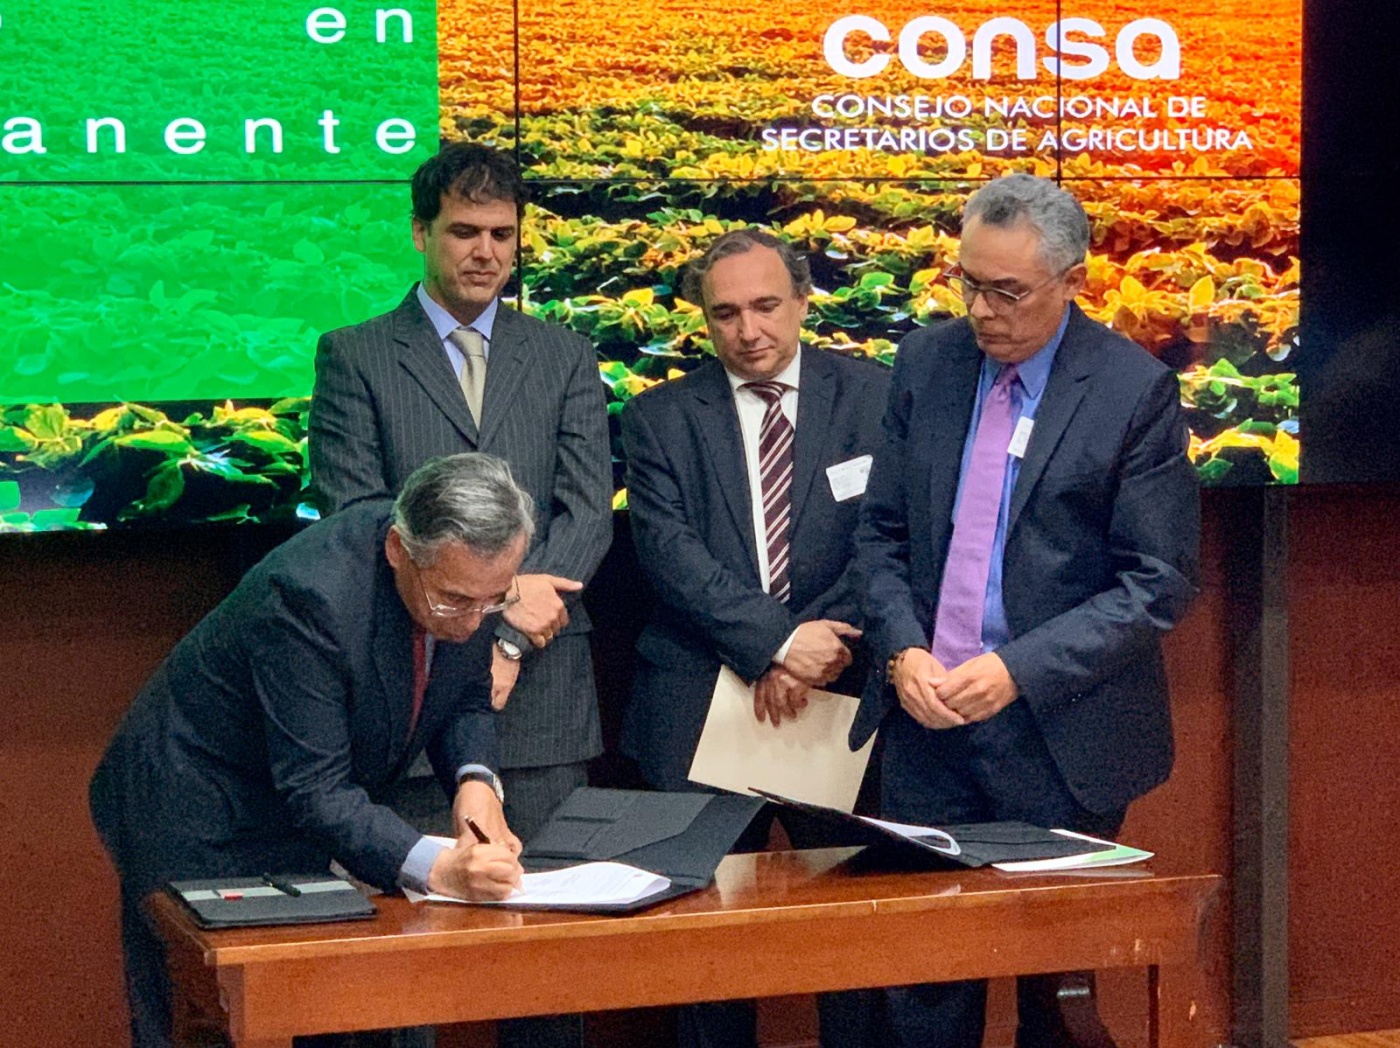 Firma del acuerdo a favor de la restauración de tierras degradadas en Colombia en el marco de la Iniciativa 20x20